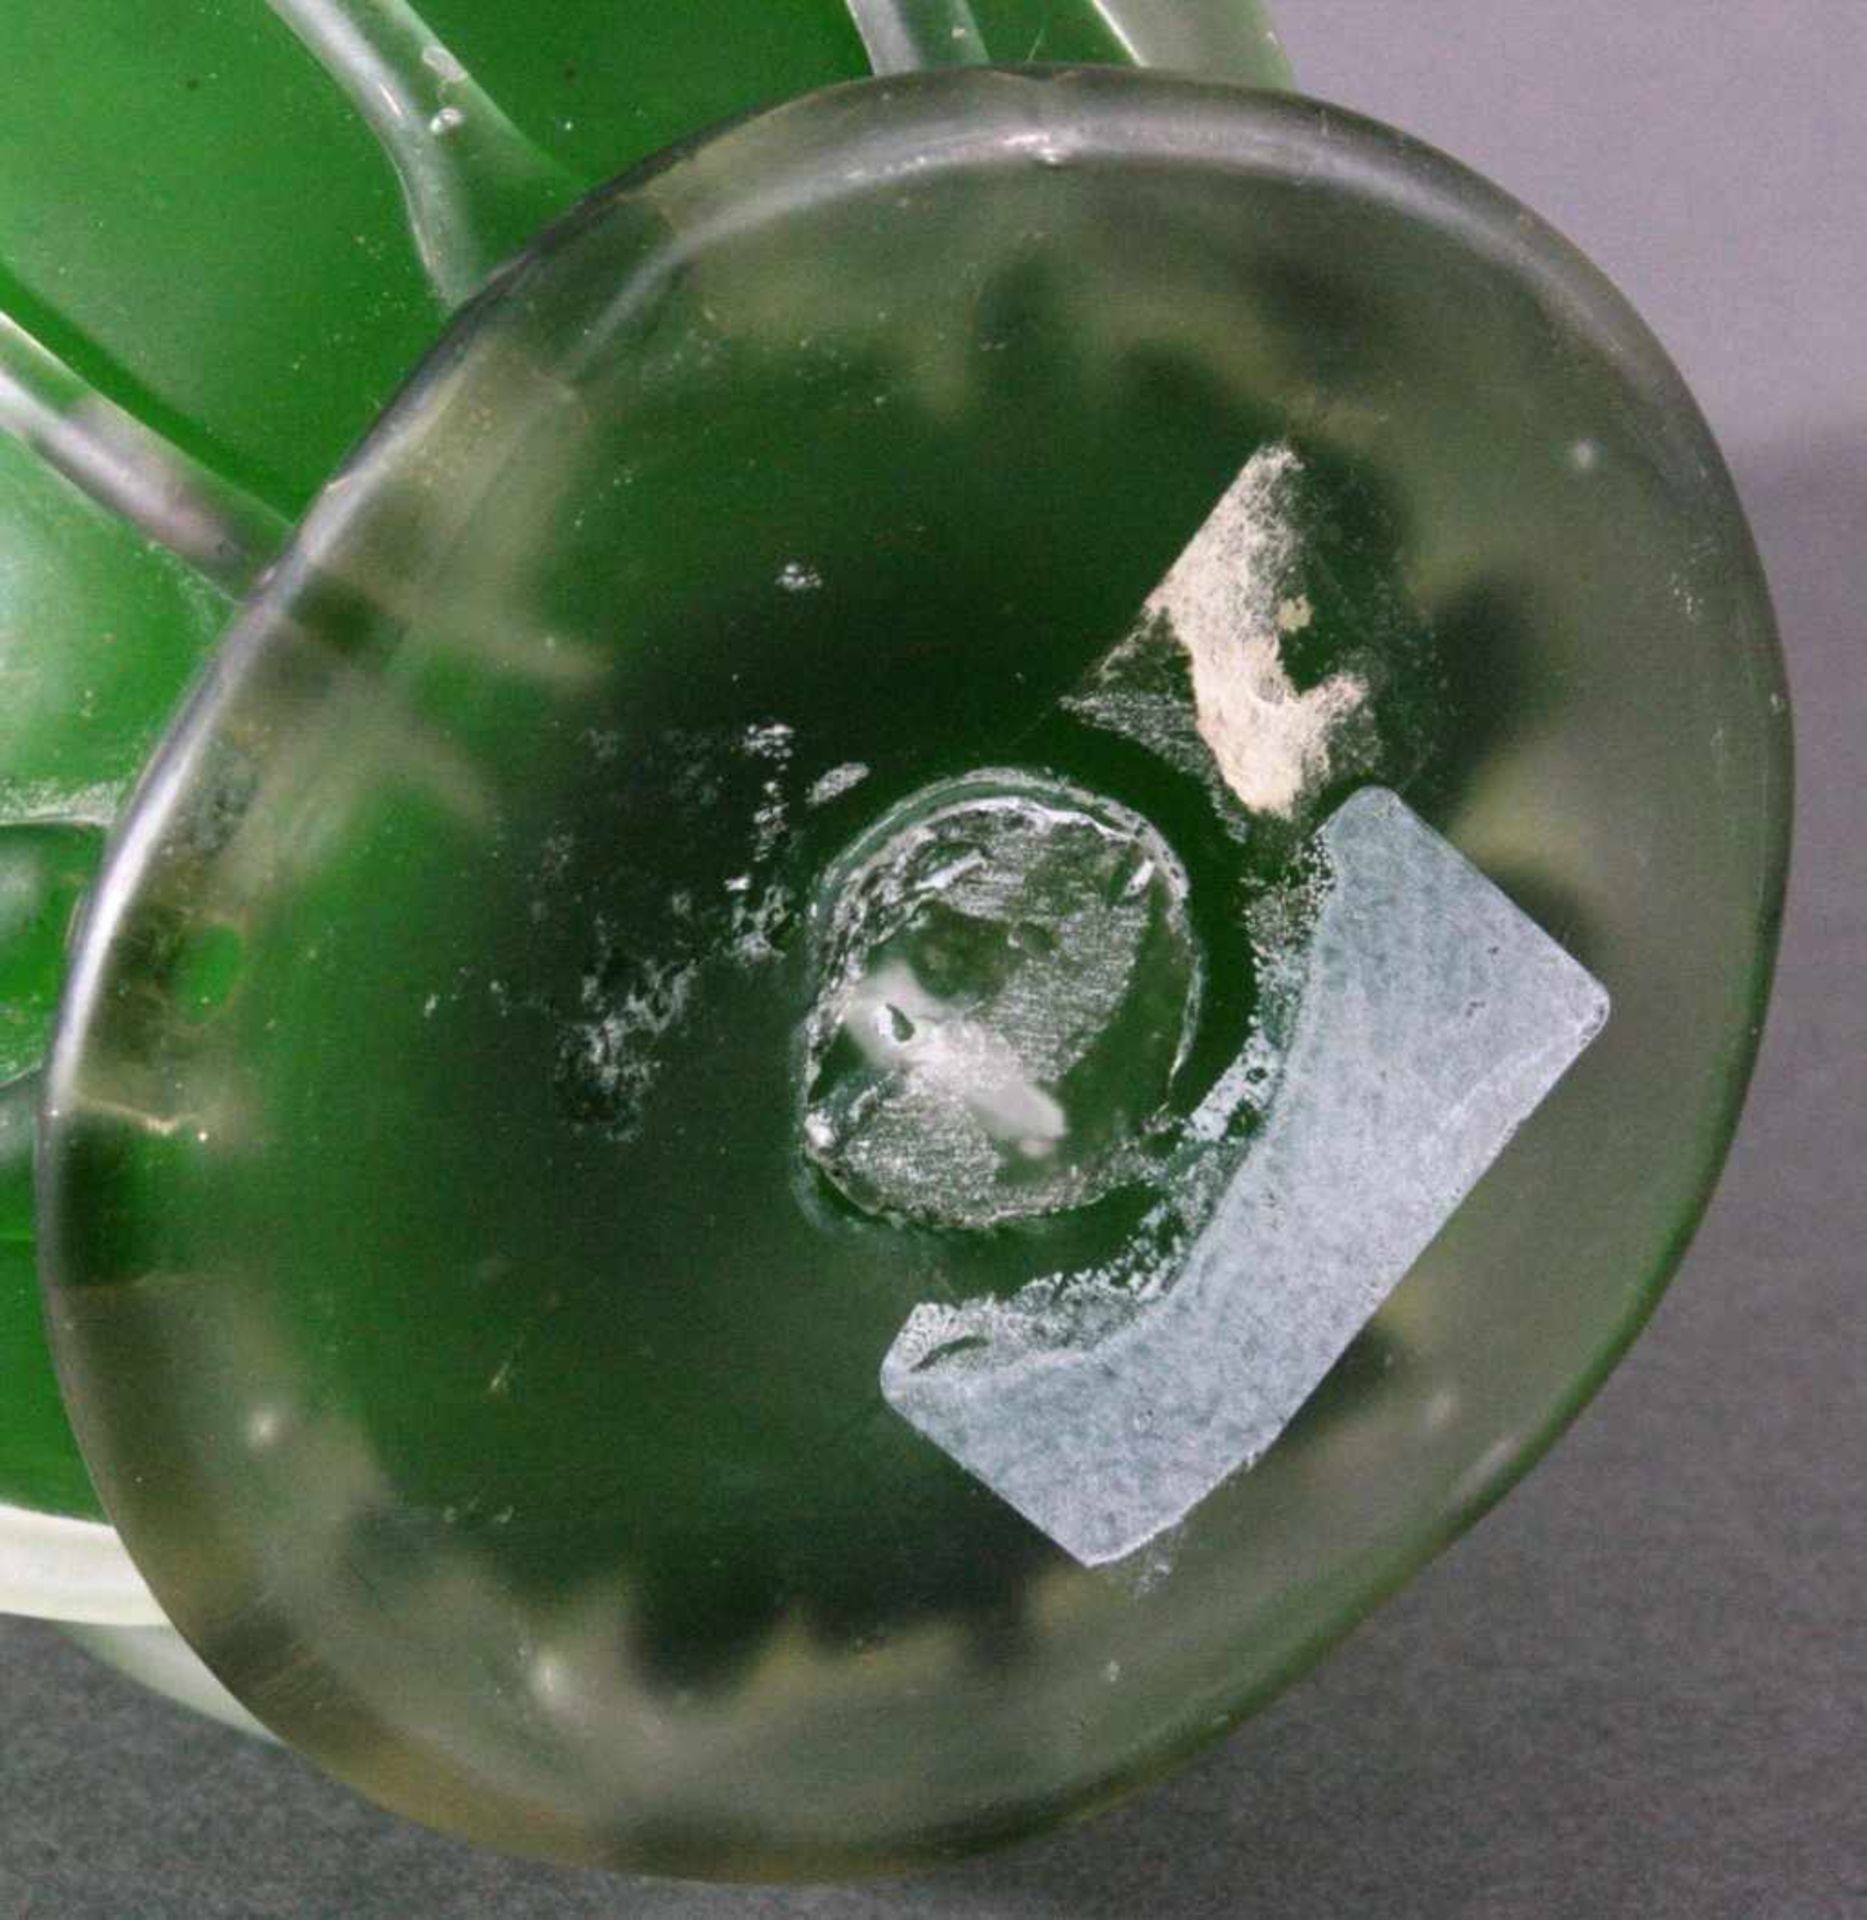 GlaskaraffeFarbloses dickwandiges mattiertes Glas, mit grünem Innenfangund aufgesetzte henkel und - Bild 3 aus 3